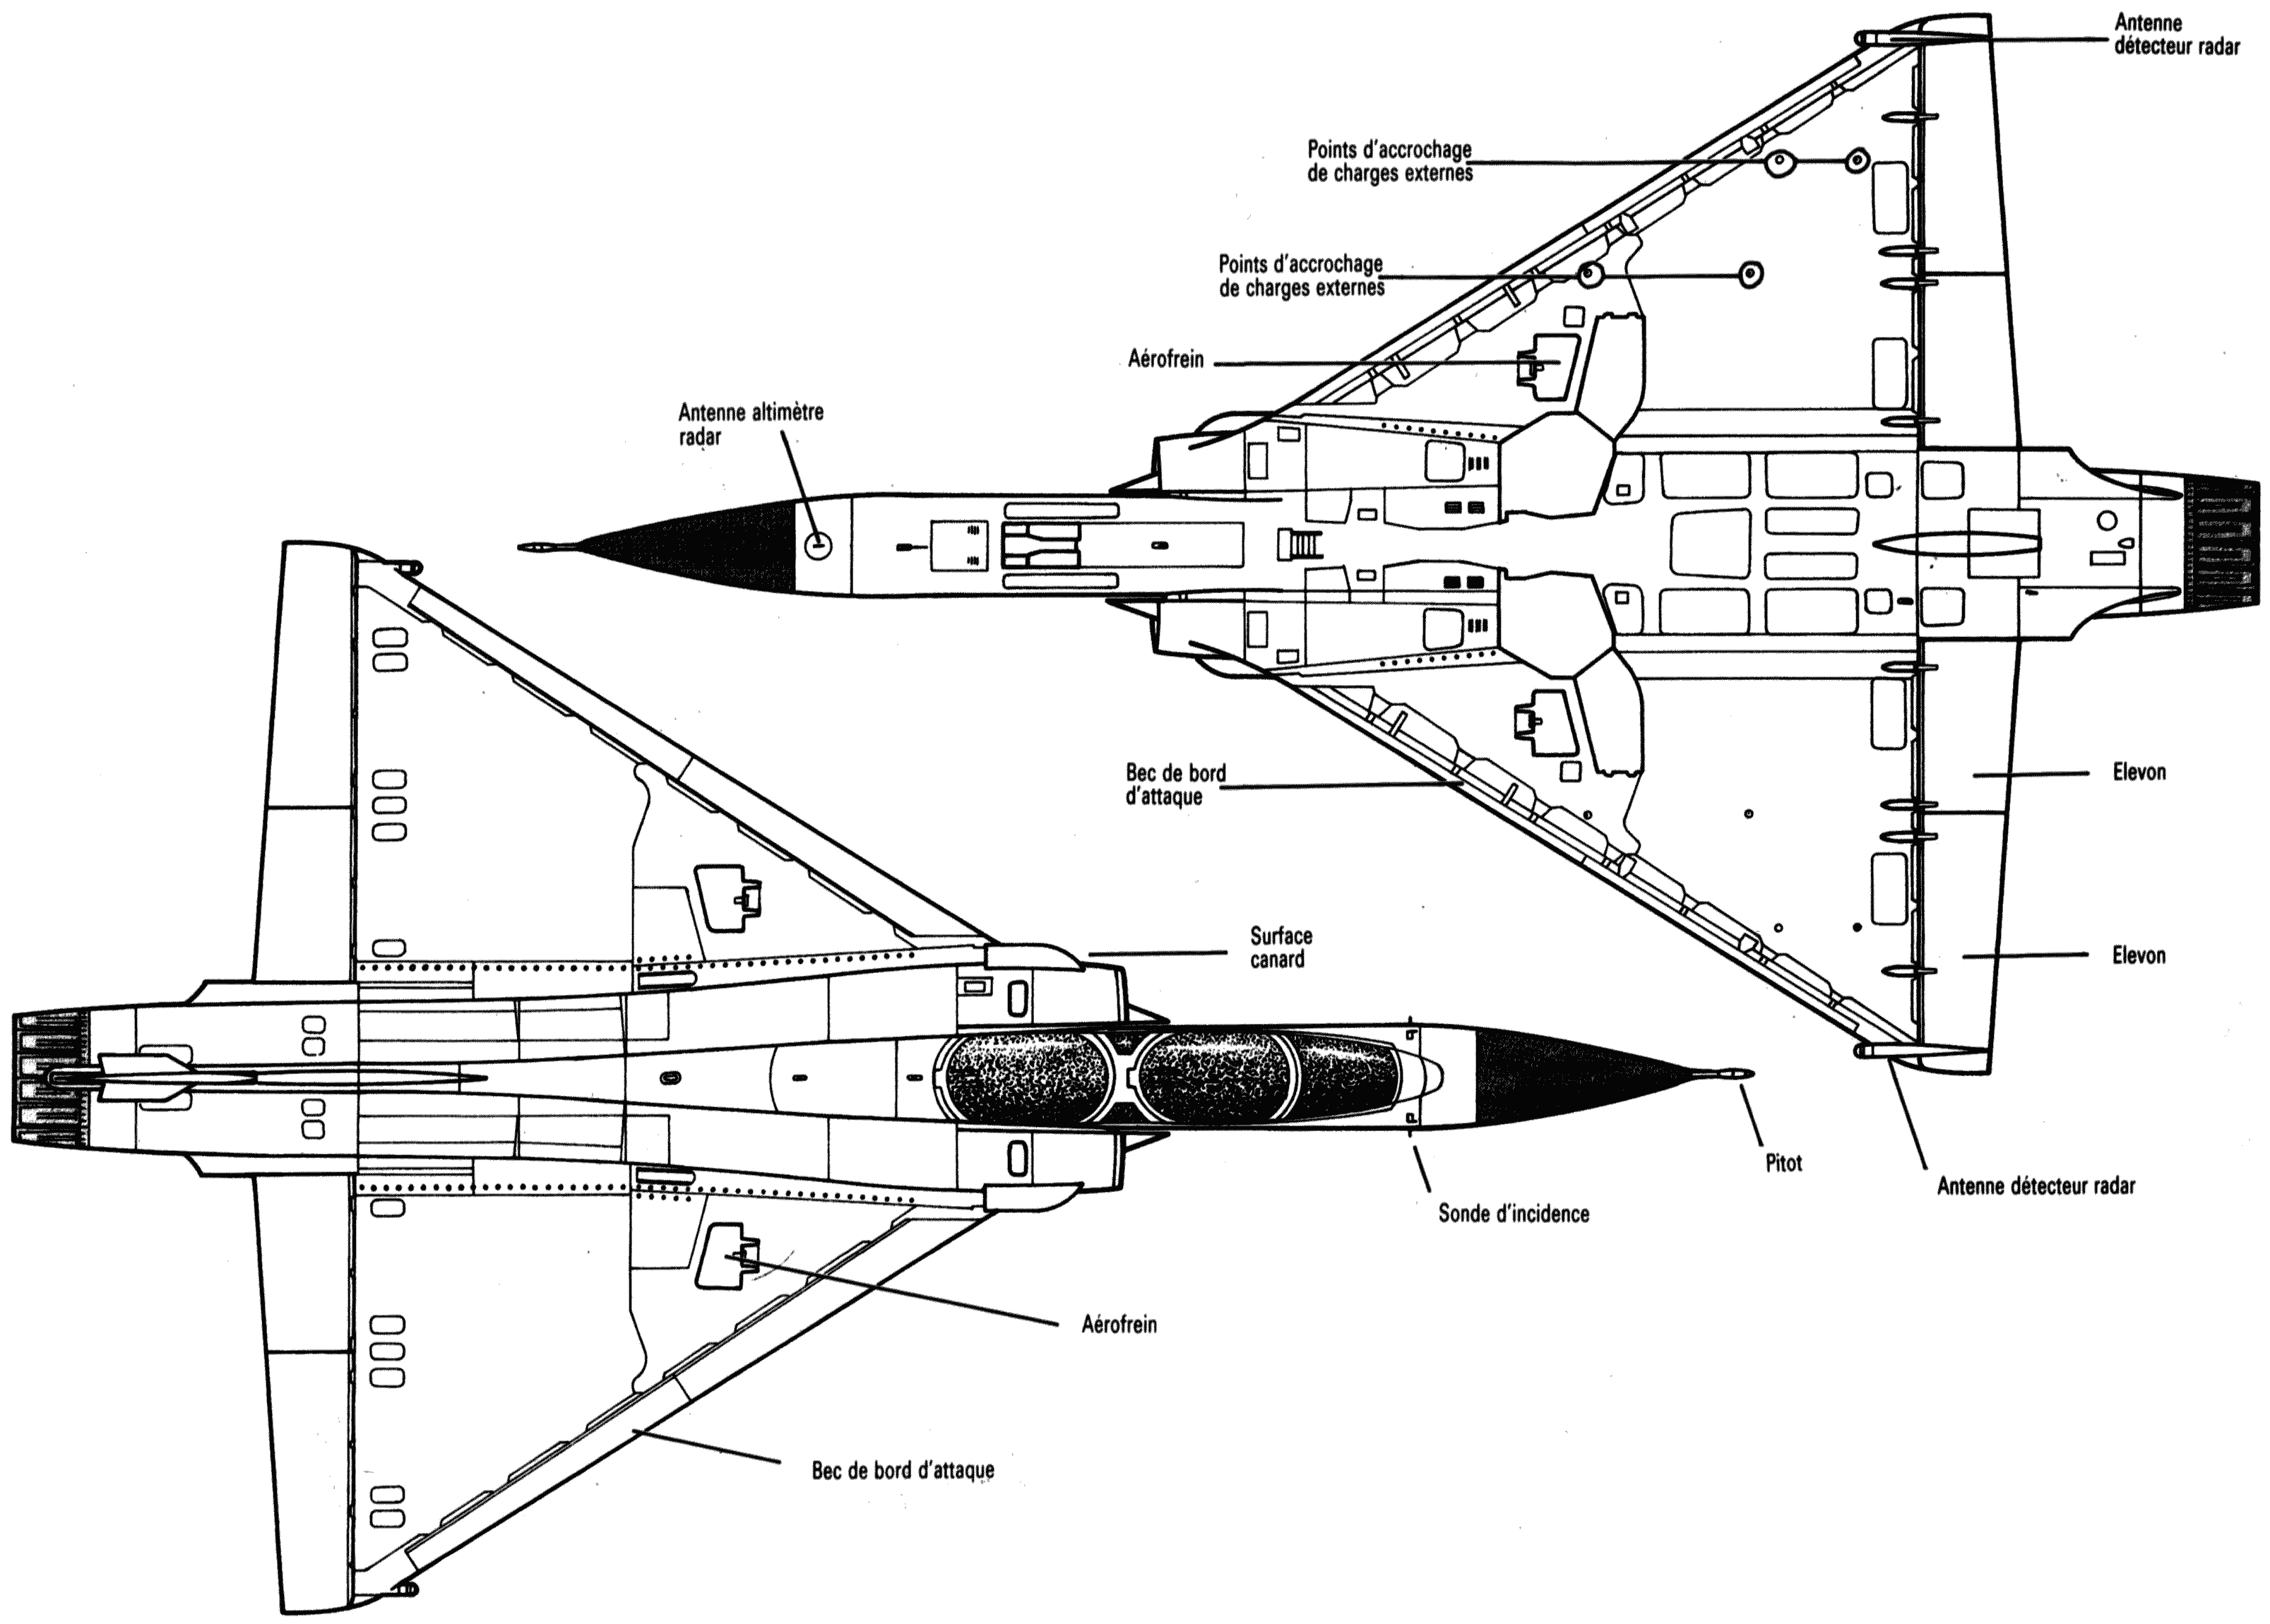 Dassault Mirage 2000 blueprint